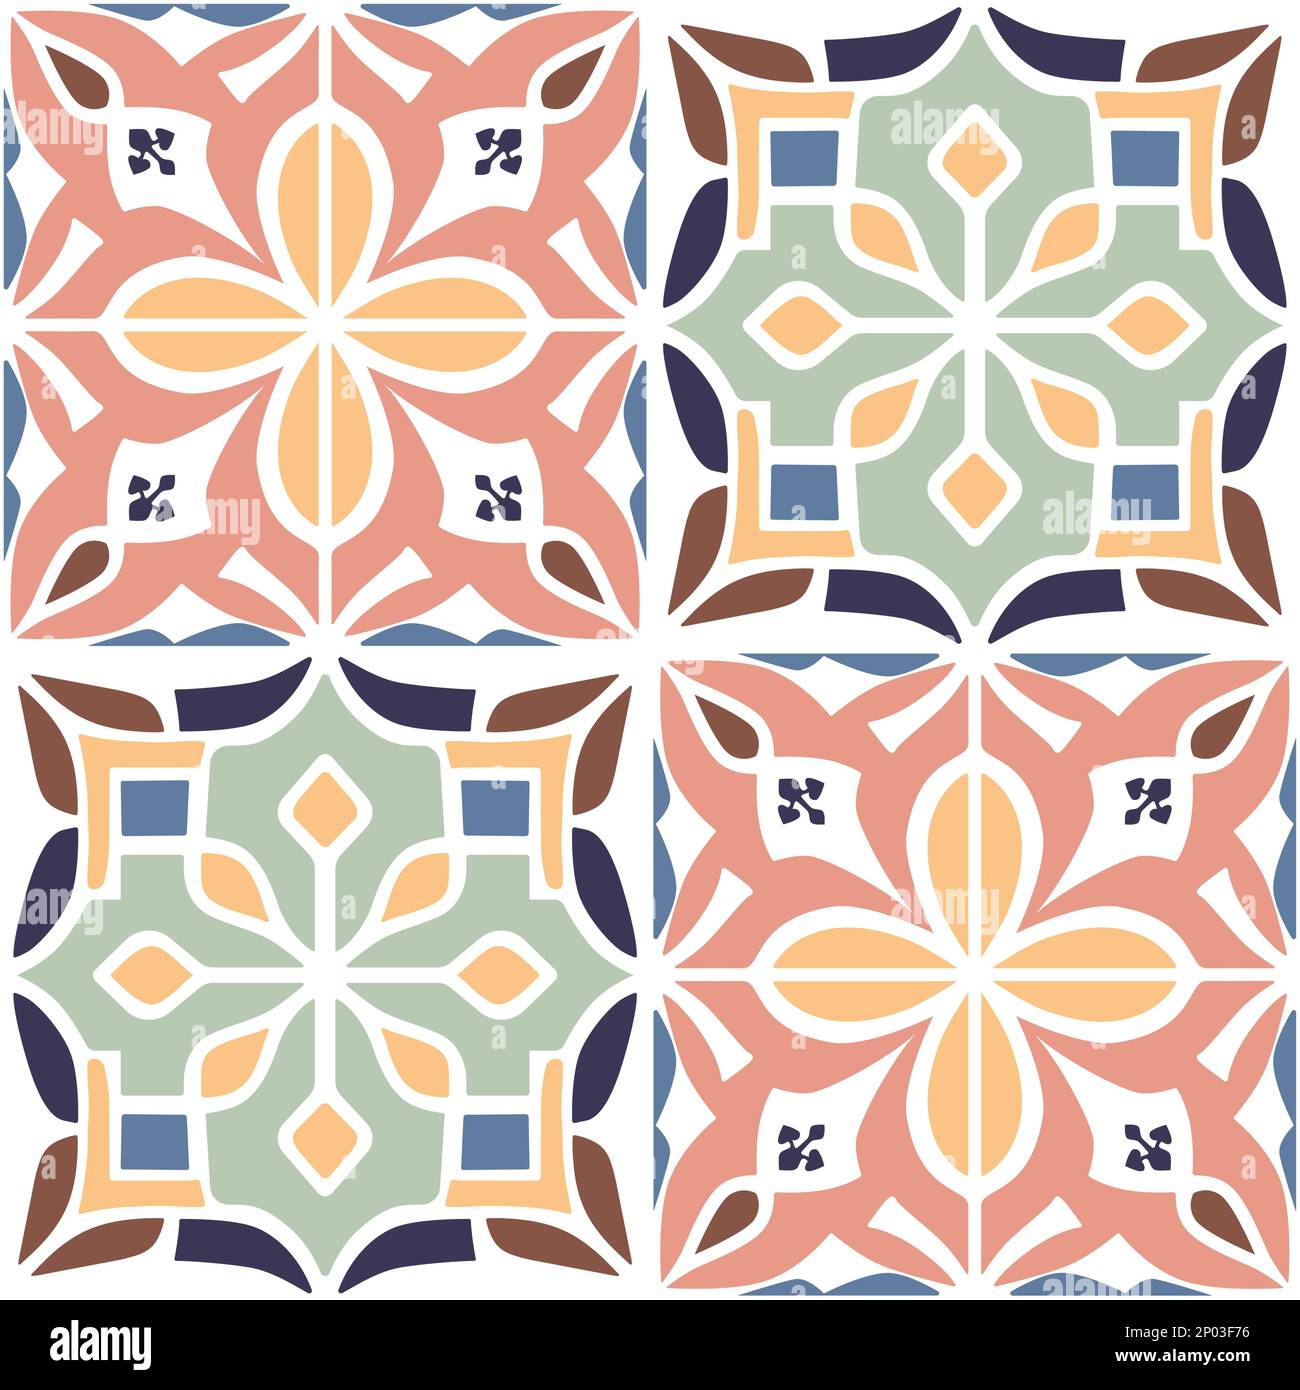 Carreaux de sol de style rétro ou traditionnel portugais ou marocain Vector motif de surface sans couture pour les impressions de fond, de produits ou de papier d'emballage. Illustration de Vecteur